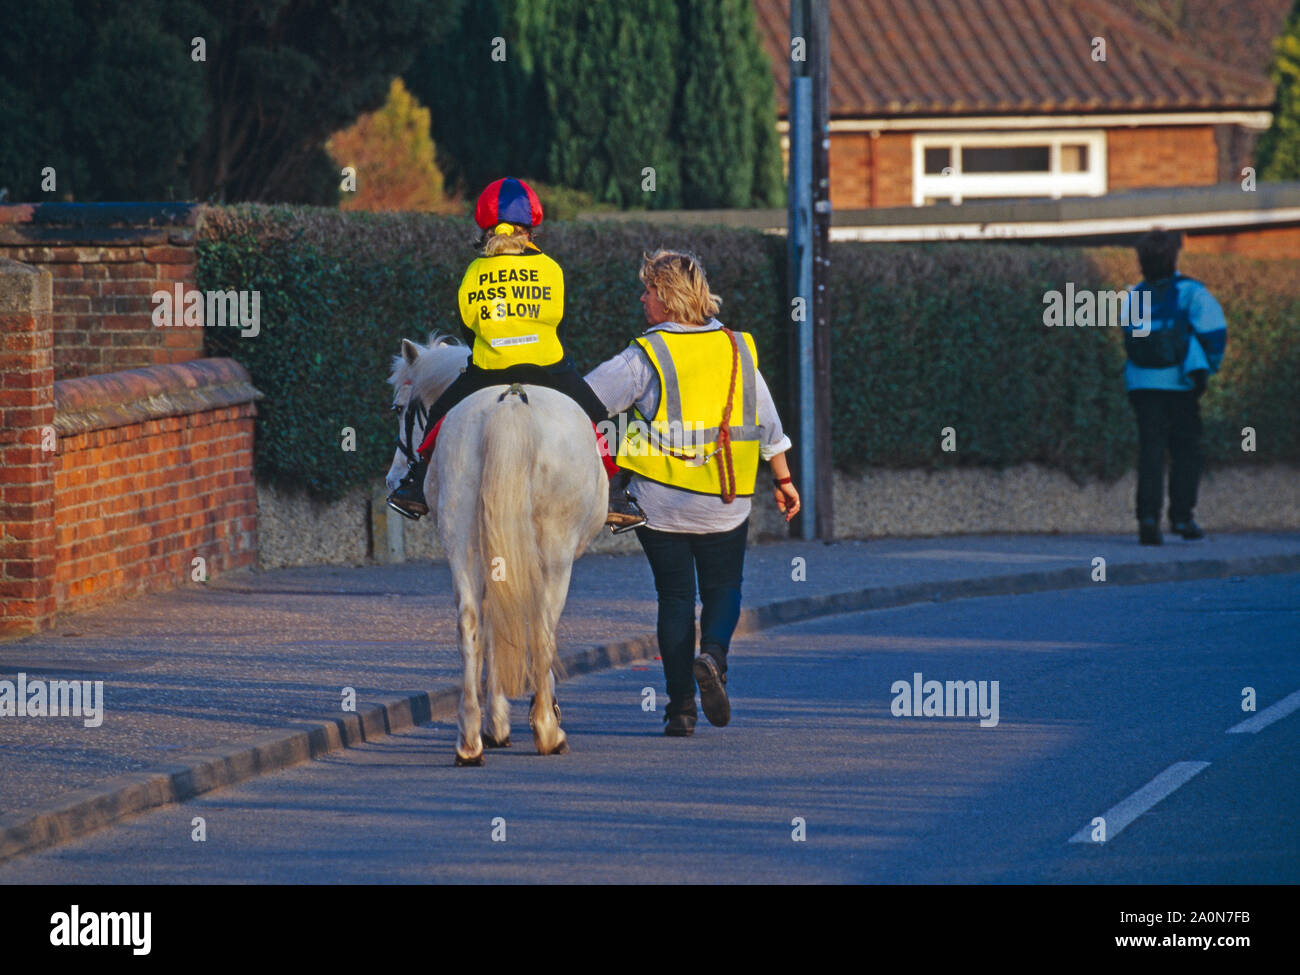 Pferd und Reiter unter der Leitung von Frau. Kind Reiter tragen Schärpe lesen "Bitte pass breit & langsam". Stalham, Norfolk, East Anglia, Großbritannien Stockfoto